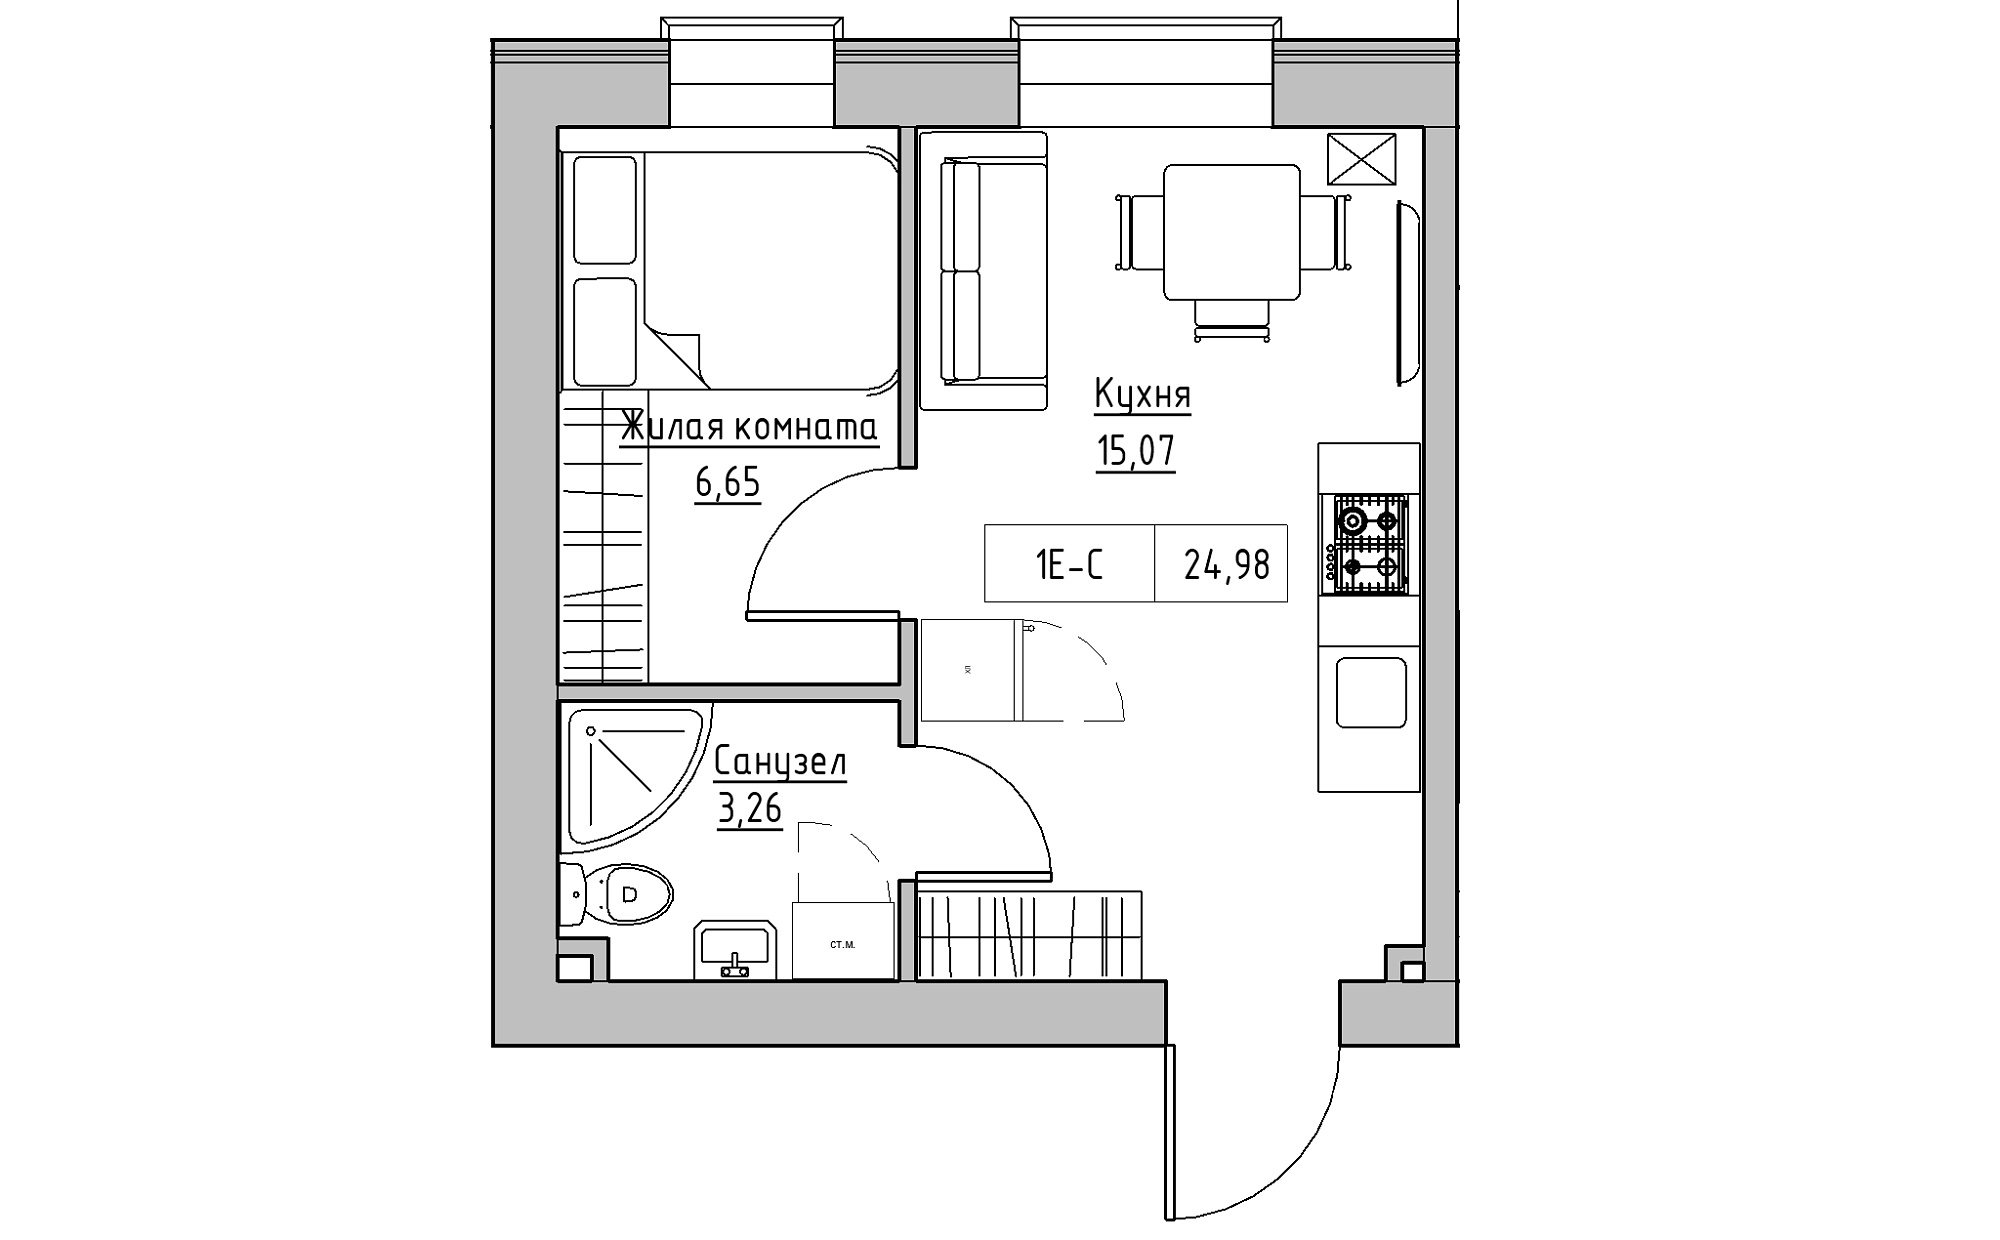 Планировка 1-к квартира площей 24.98м2, KS-022-01/0004.